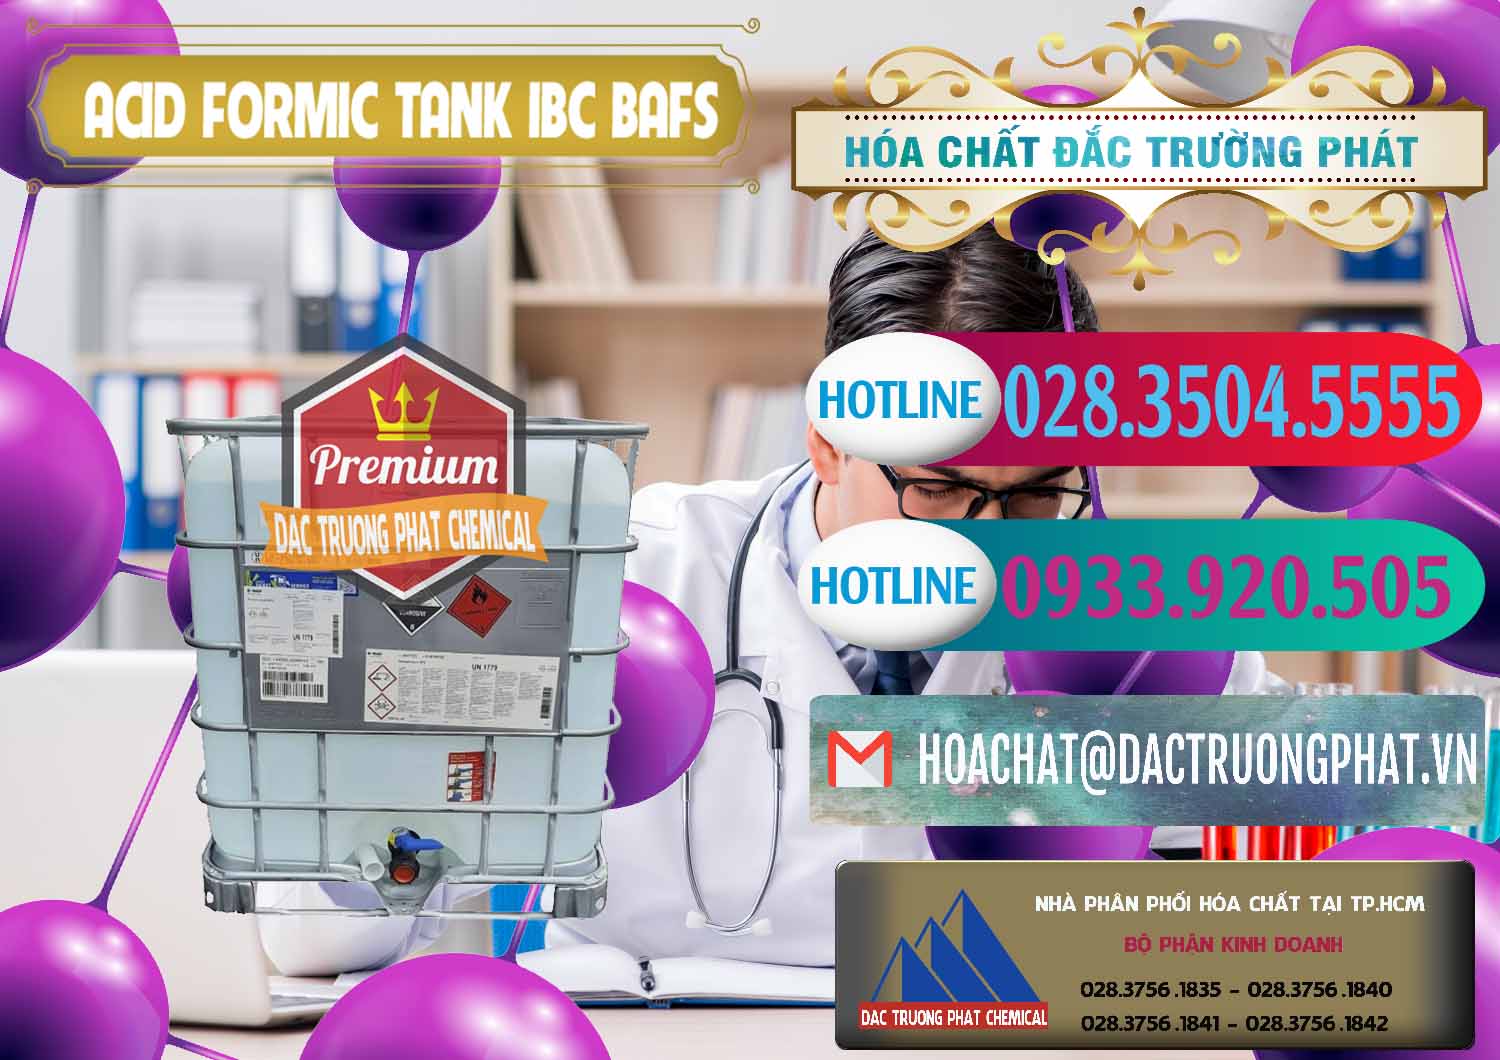 Đơn vị chuyên bán - phân phối Acid Formic - Axit Formic Tank - Bồn IBC BASF Đức - 0366 - Nơi nhập khẩu _ cung cấp hóa chất tại TP.HCM - truongphat.vn